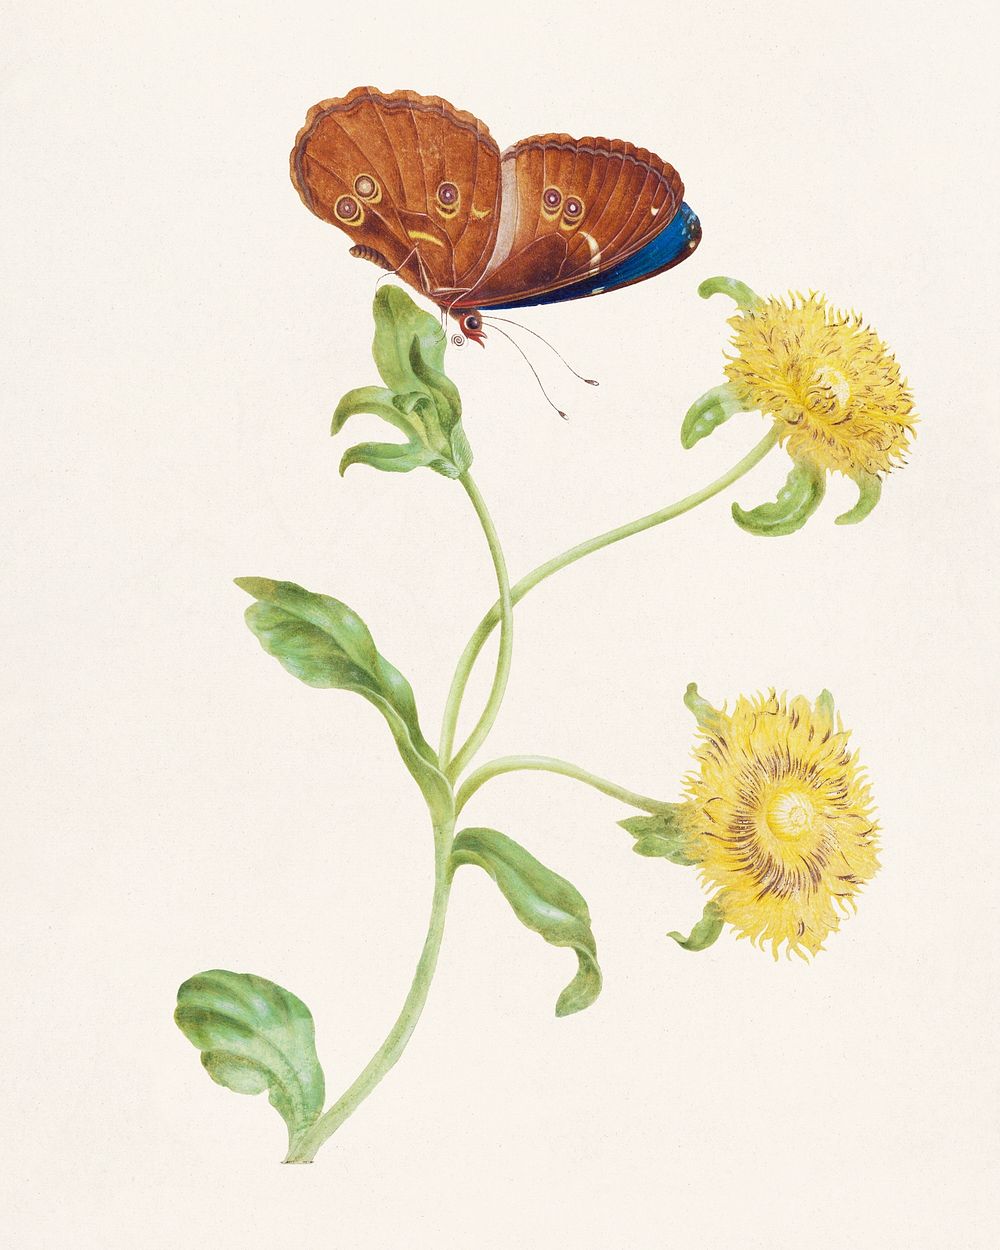 Vlinder op de knop van een plant met gele bloemen (1965) by Maria Sibylla Merian. Original from The Rijksmuseum. Digitally…